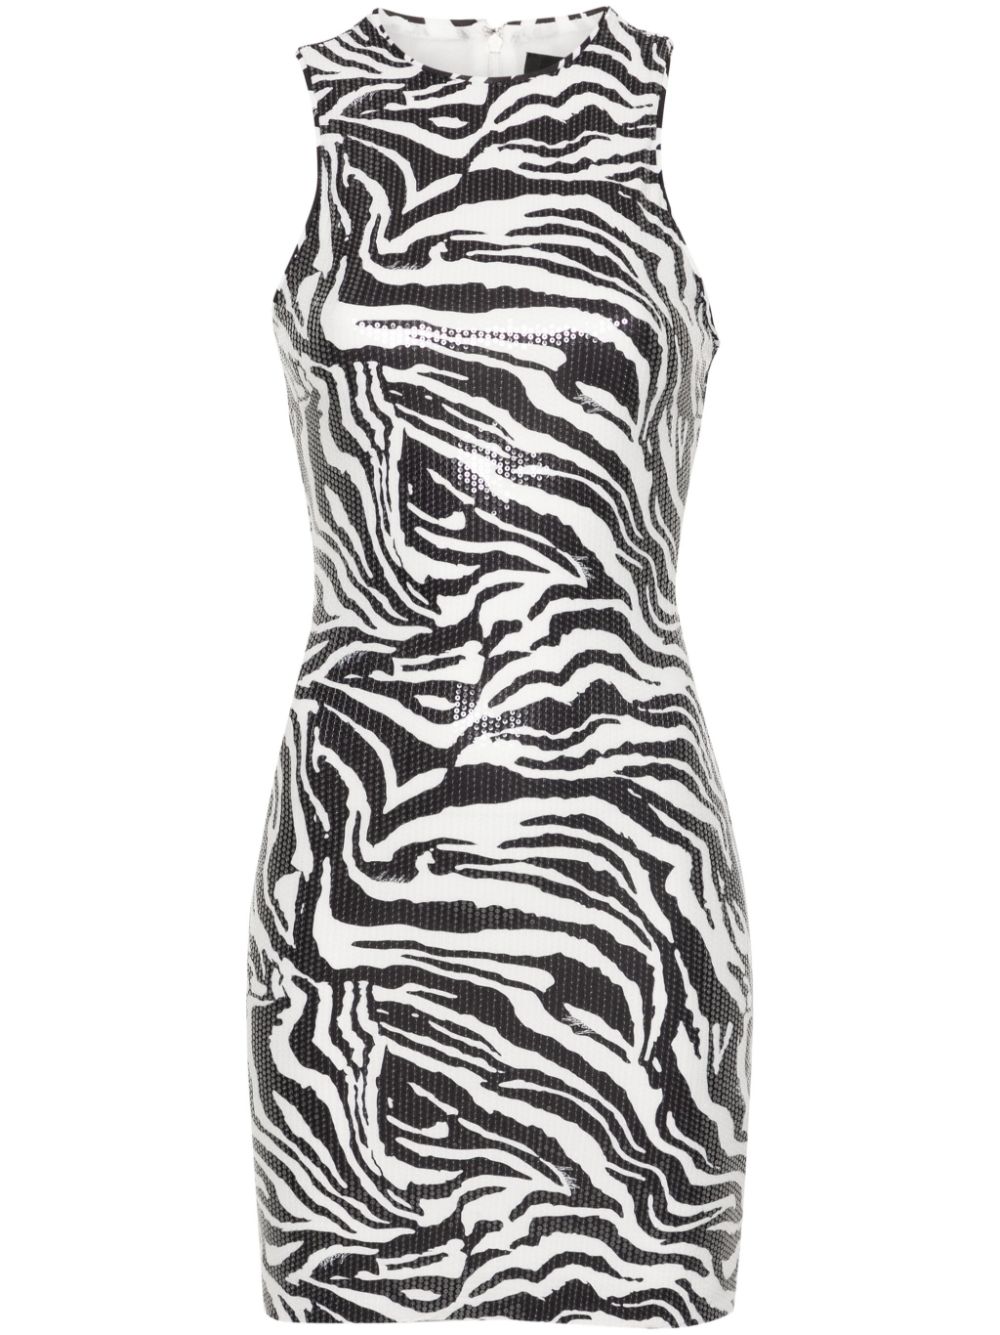 zebra-print sequin embellished dress